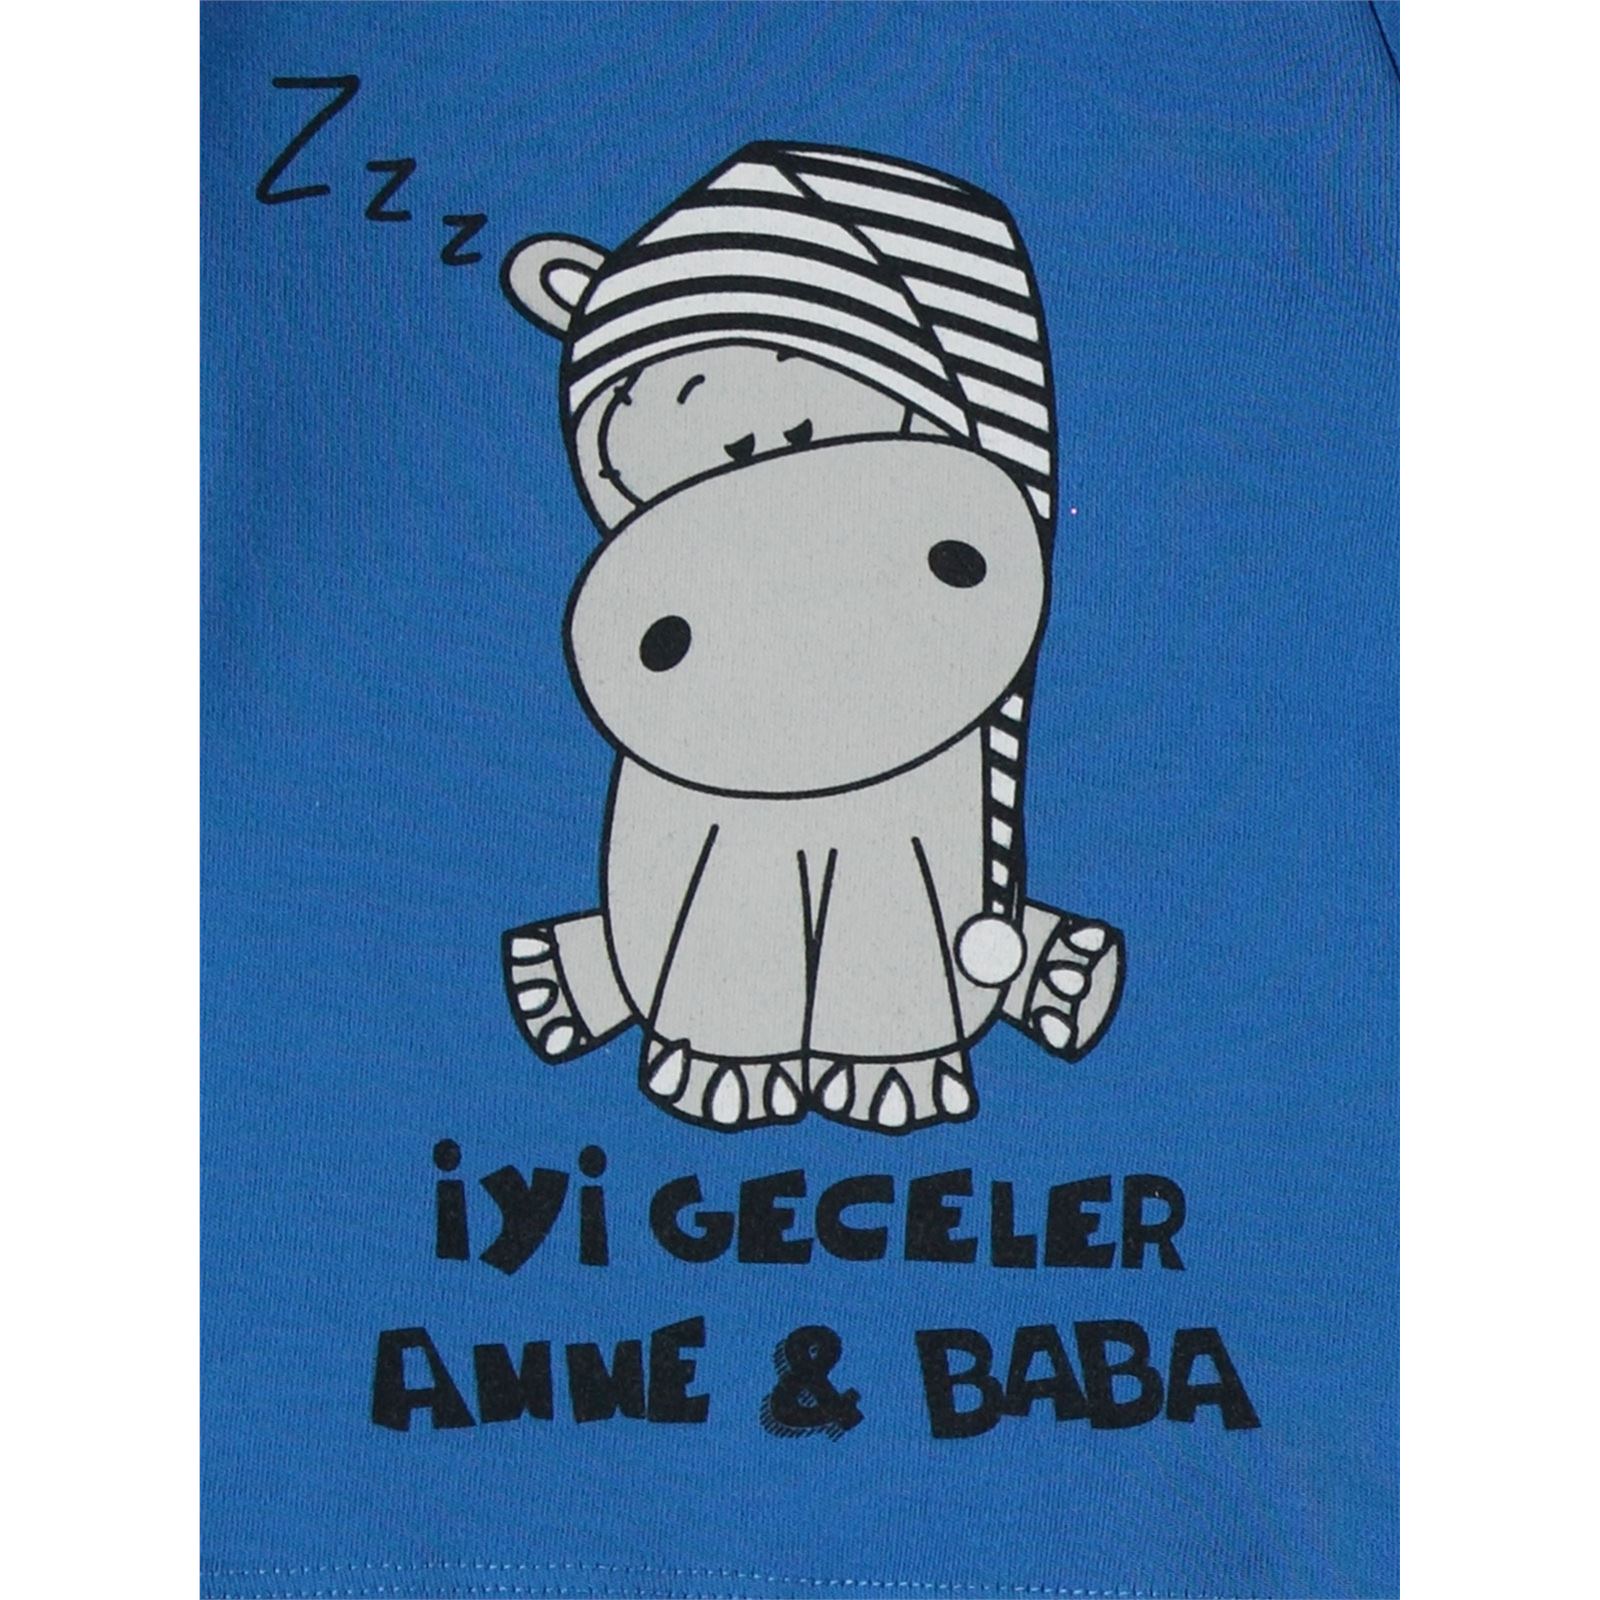 Civil Baby Erkek Bebek Pijama Takımı 6-18 Ay Saks Mavisi